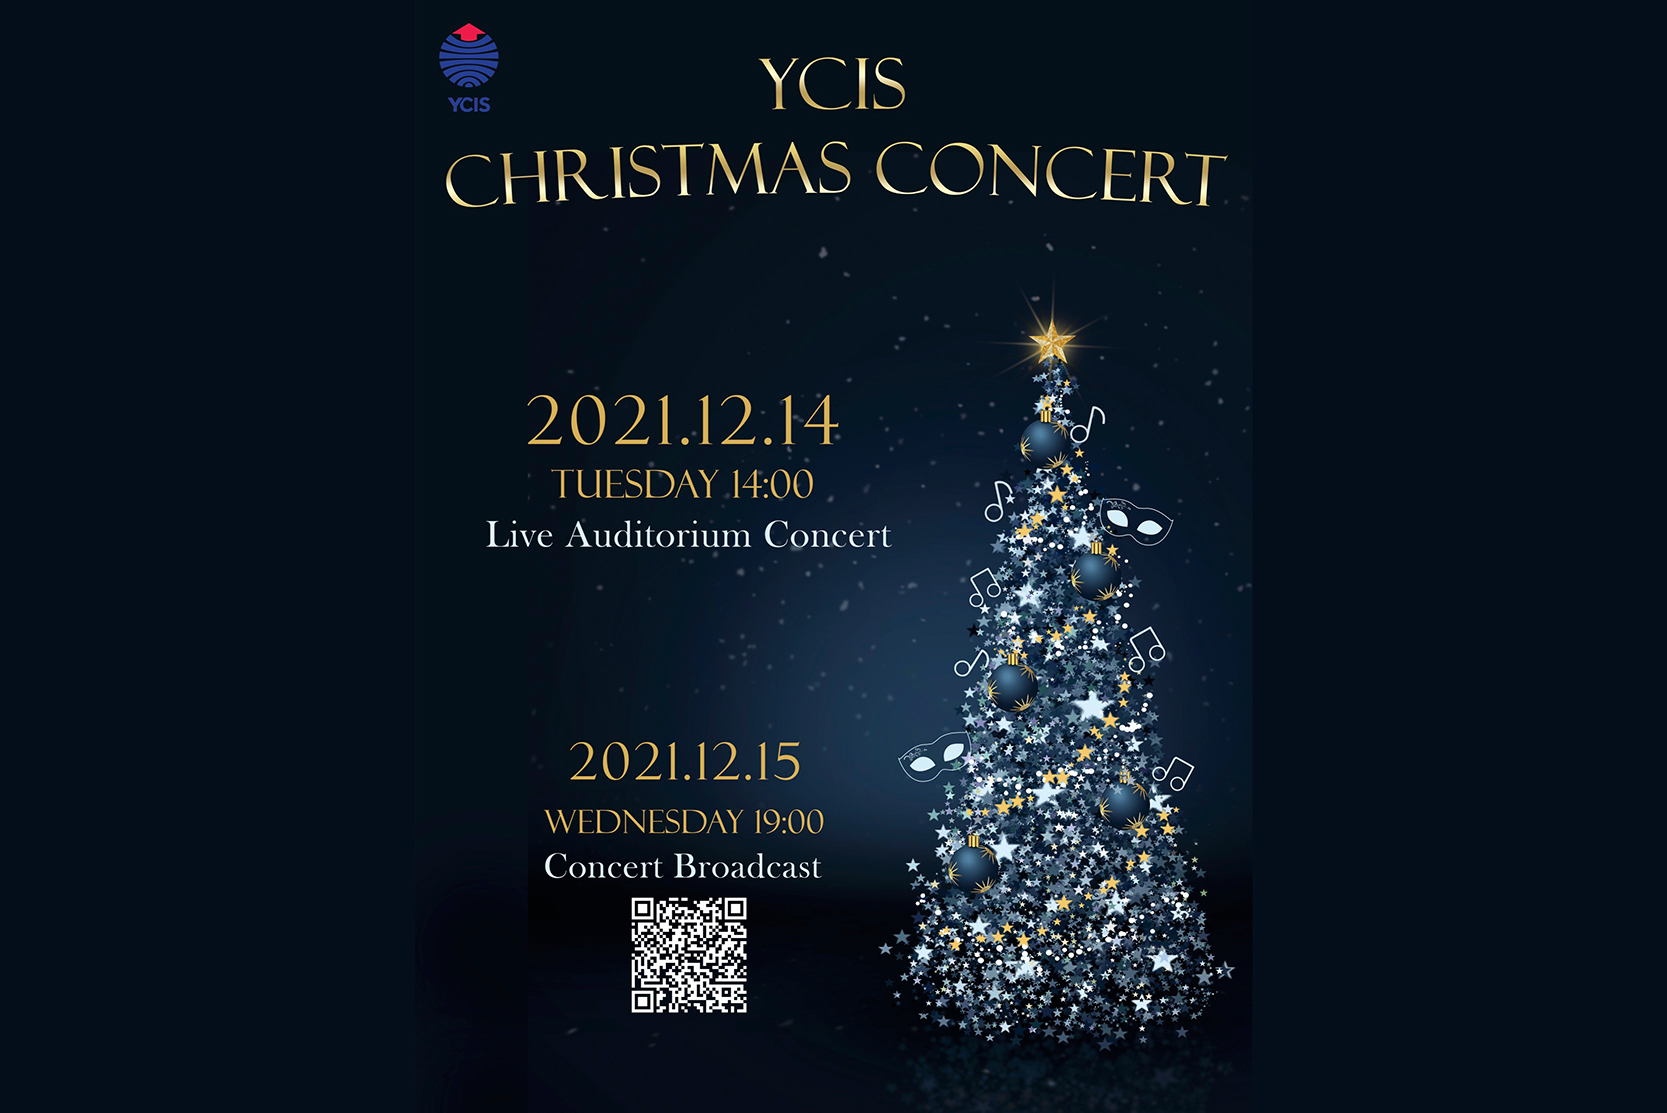 YCIS Christmas Concert 2021